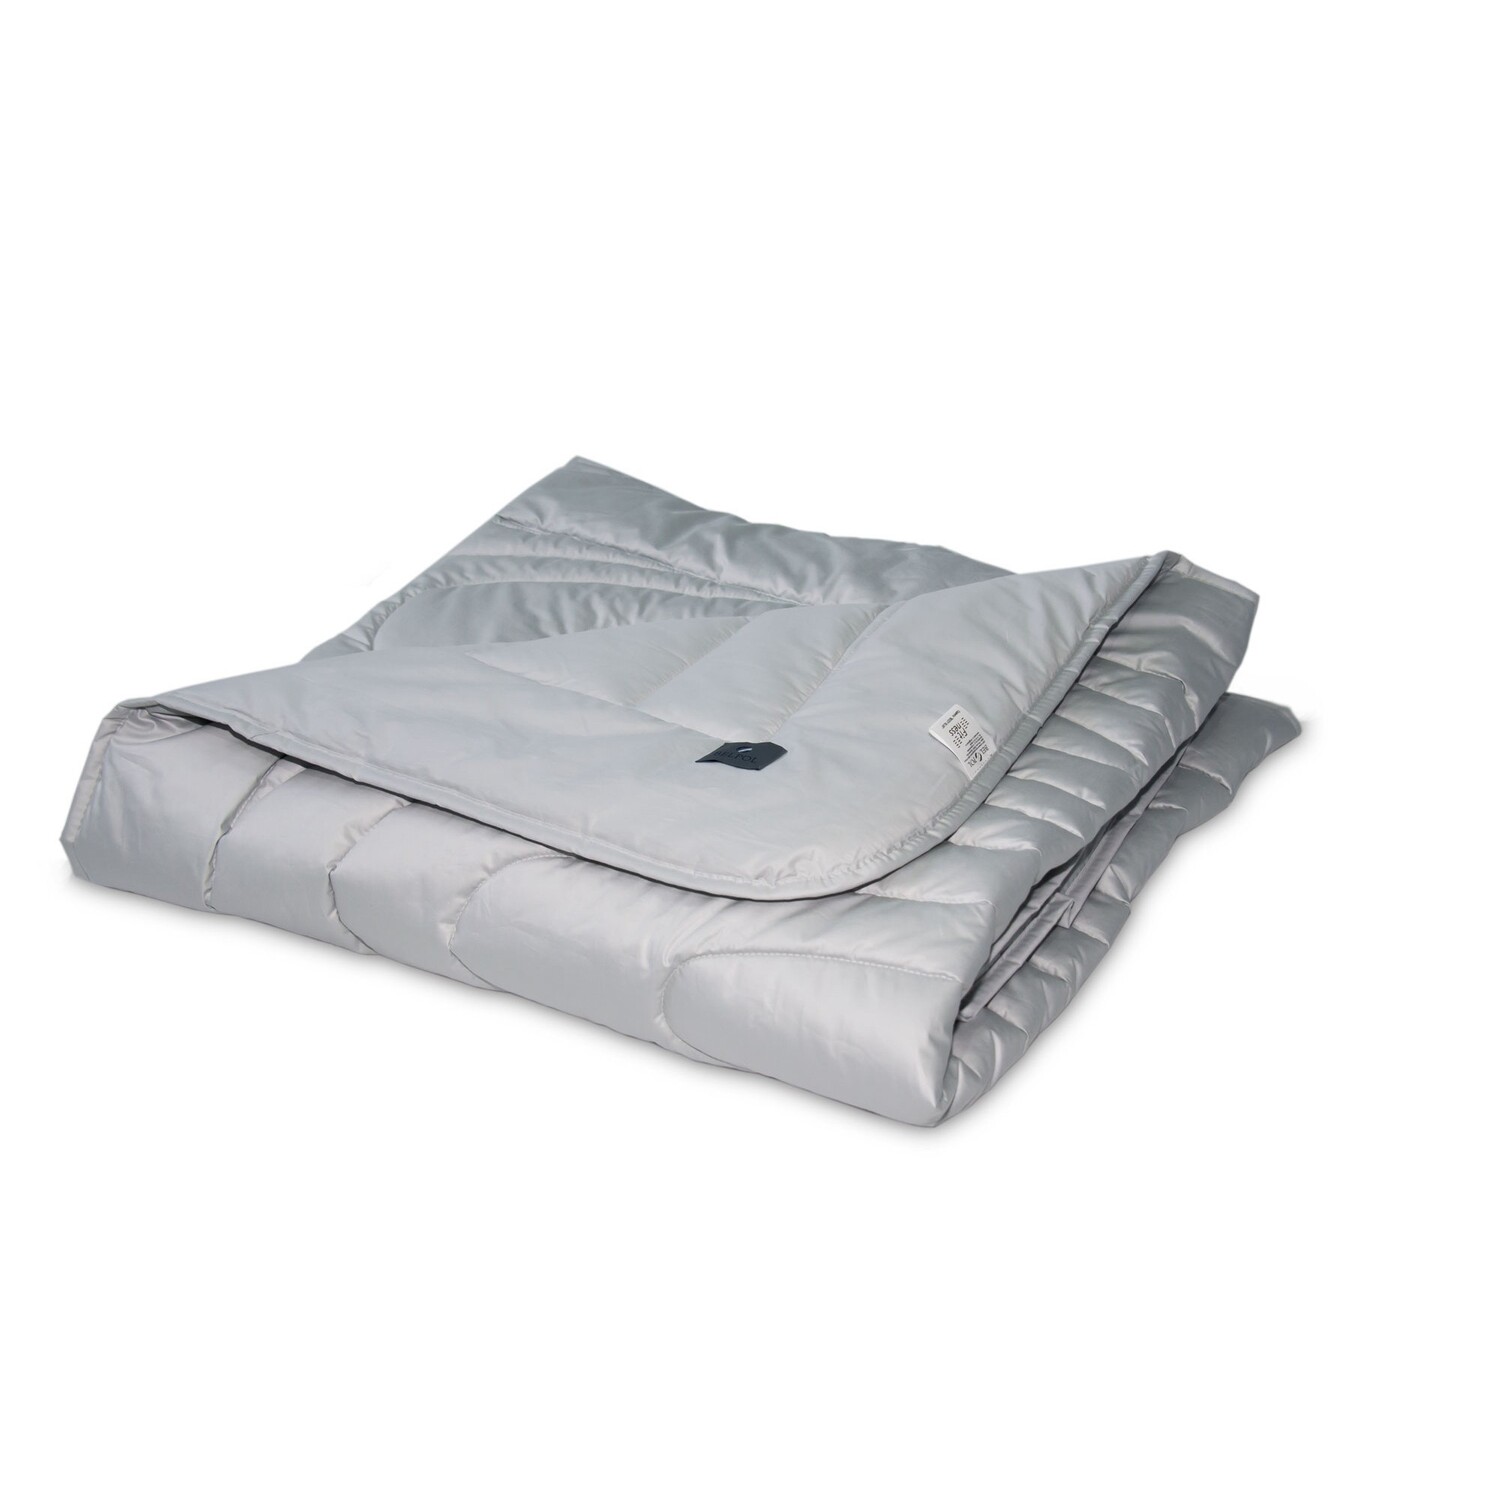 Одеяло Body Slim Всесезонное (140х205 см), размер 140х205 см bp645781 Одеяло Body Slim Всесезонное (140х205 см) - фото 1